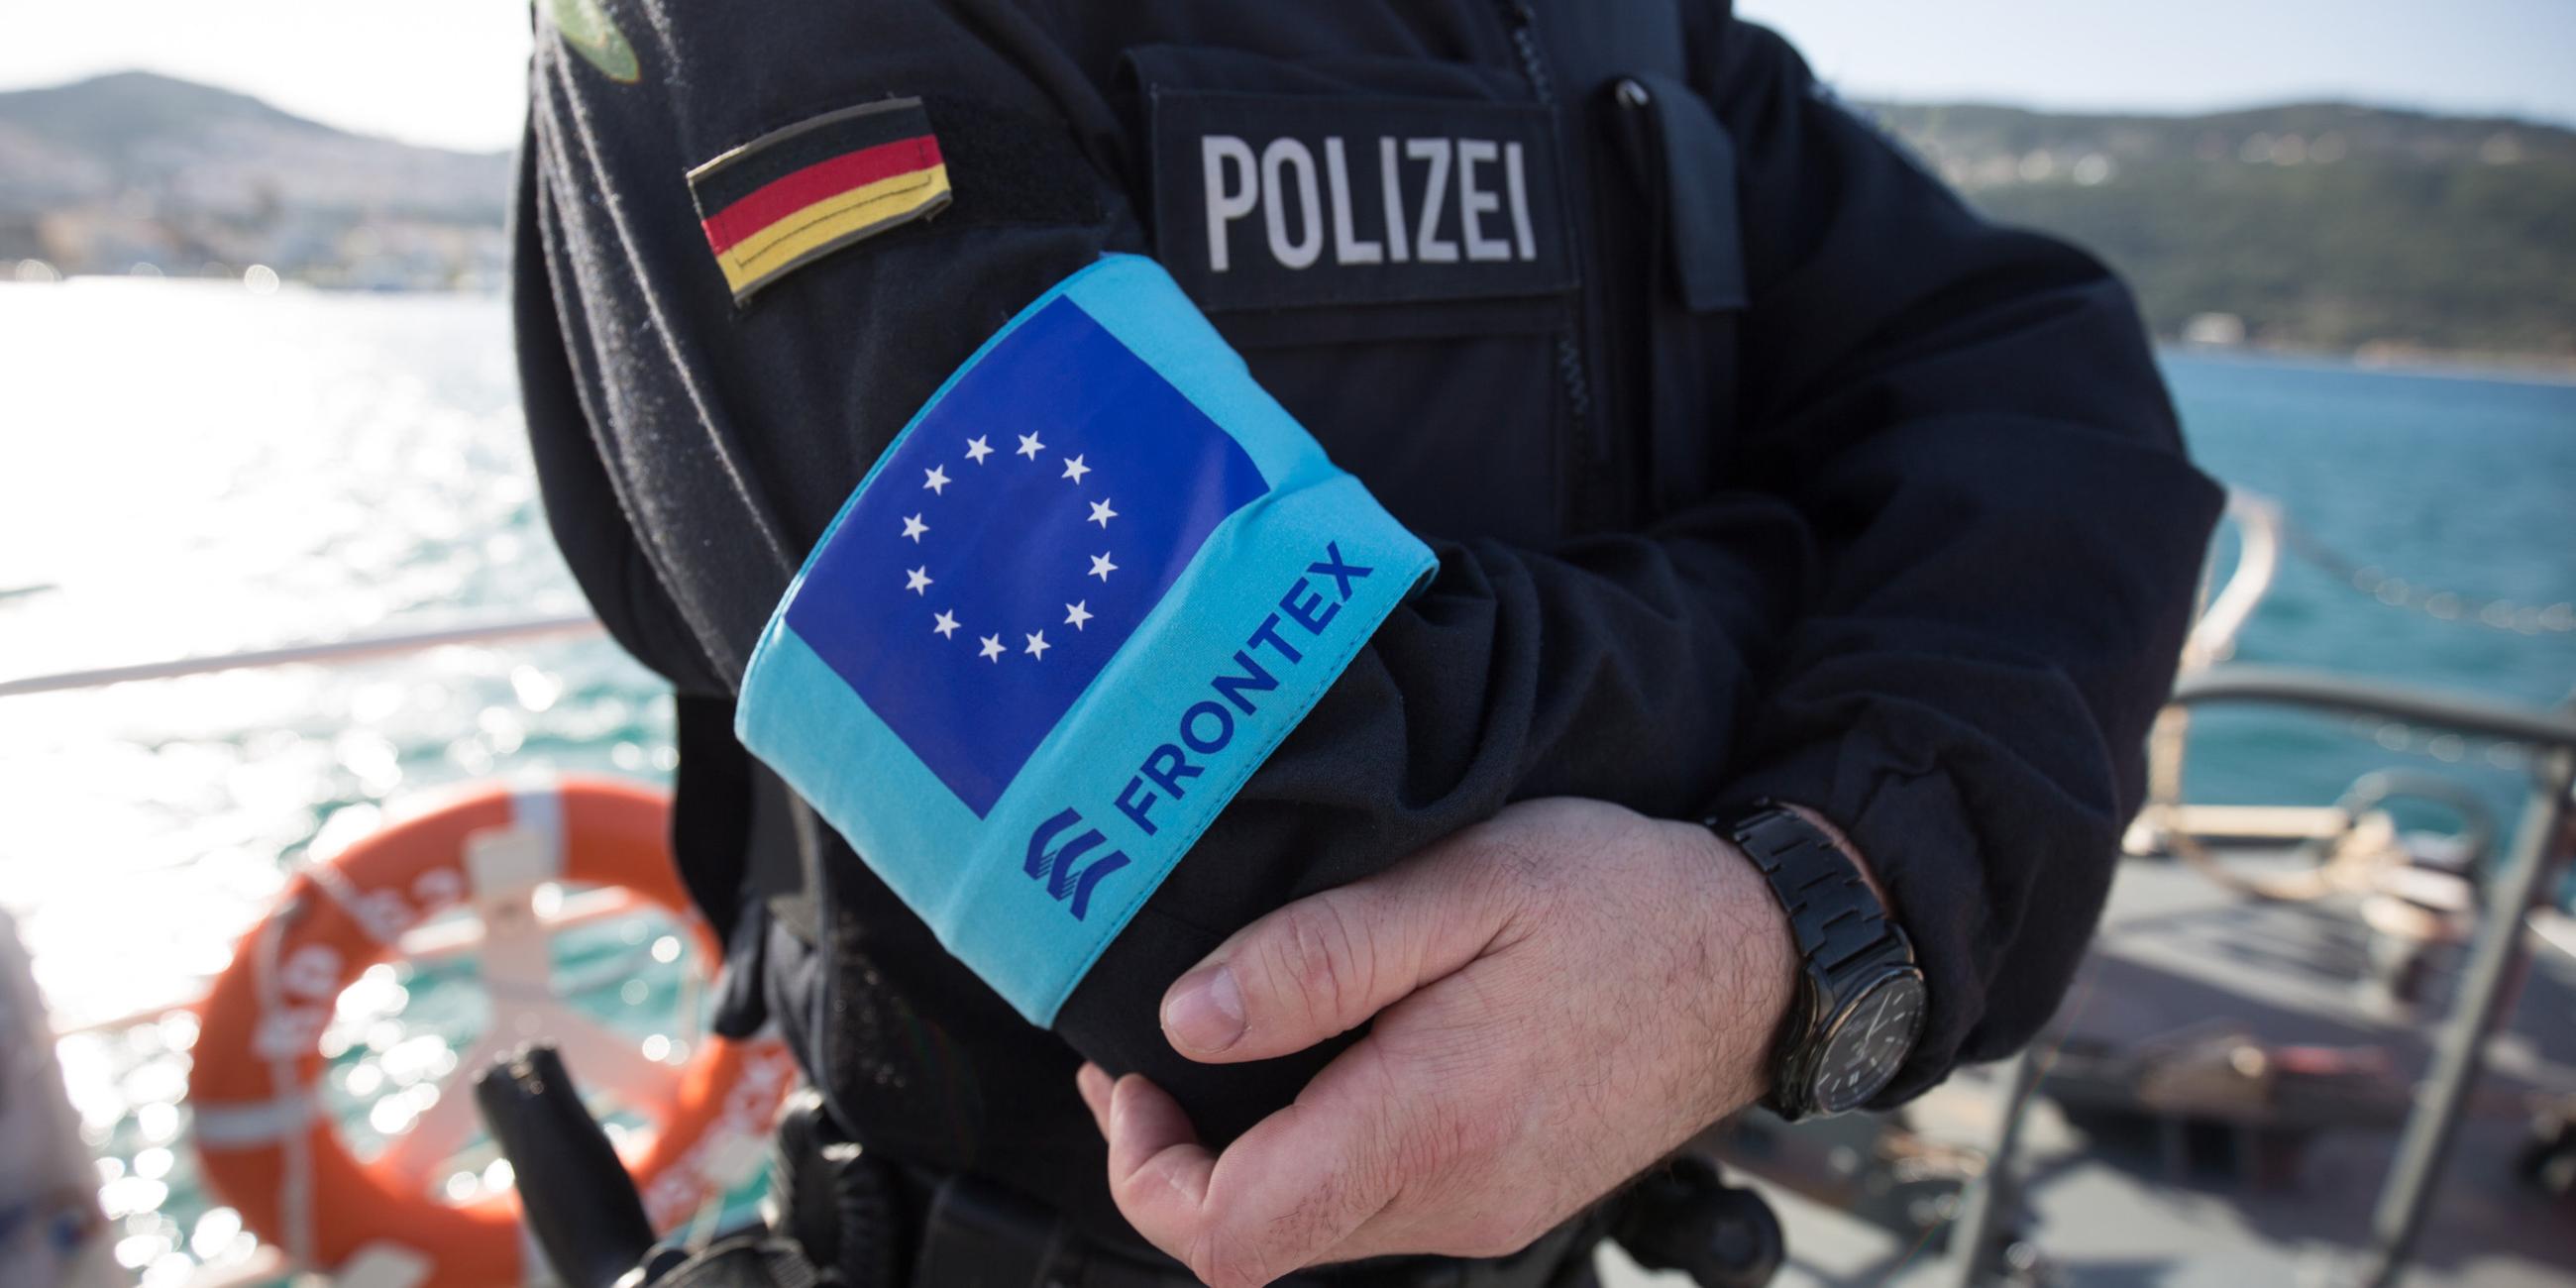 Polizist auf Schiff mit Frontex-Logo auf der Uniform.